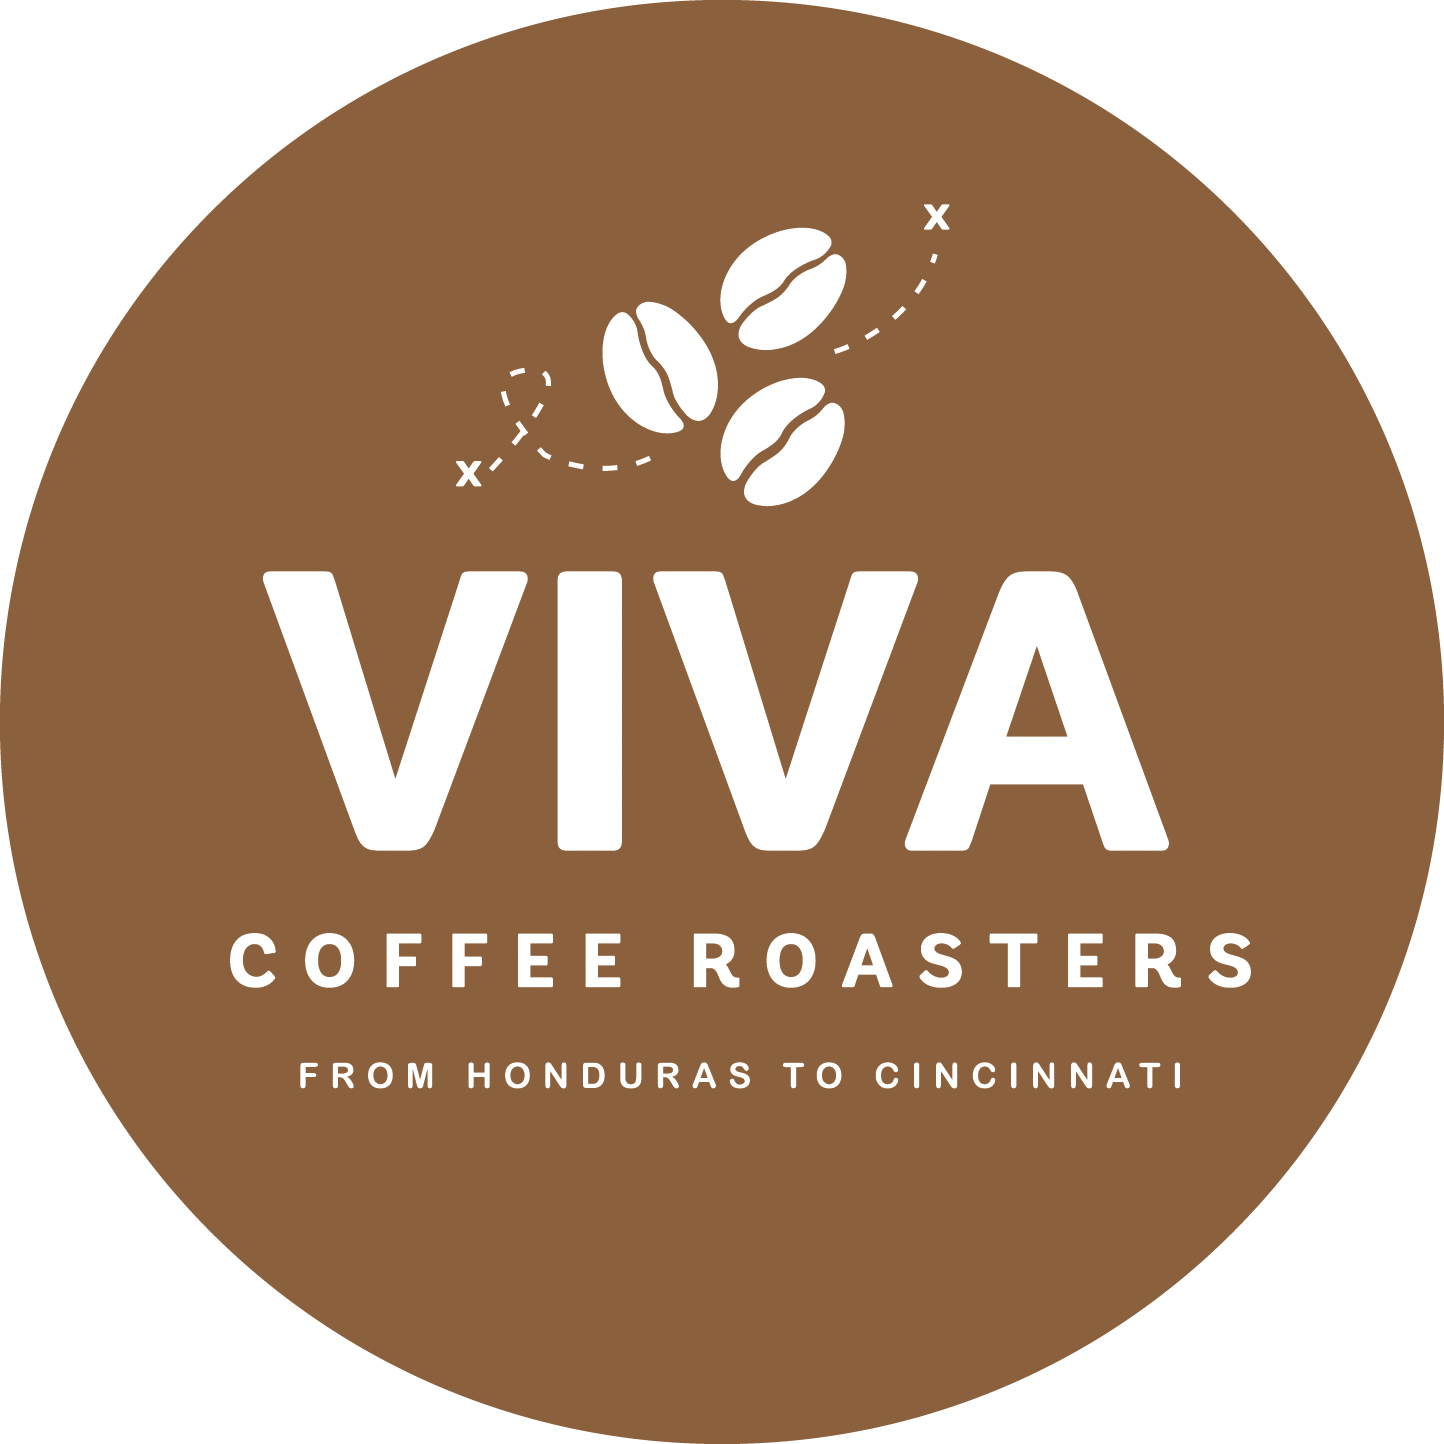 Viva Coffee Roasters